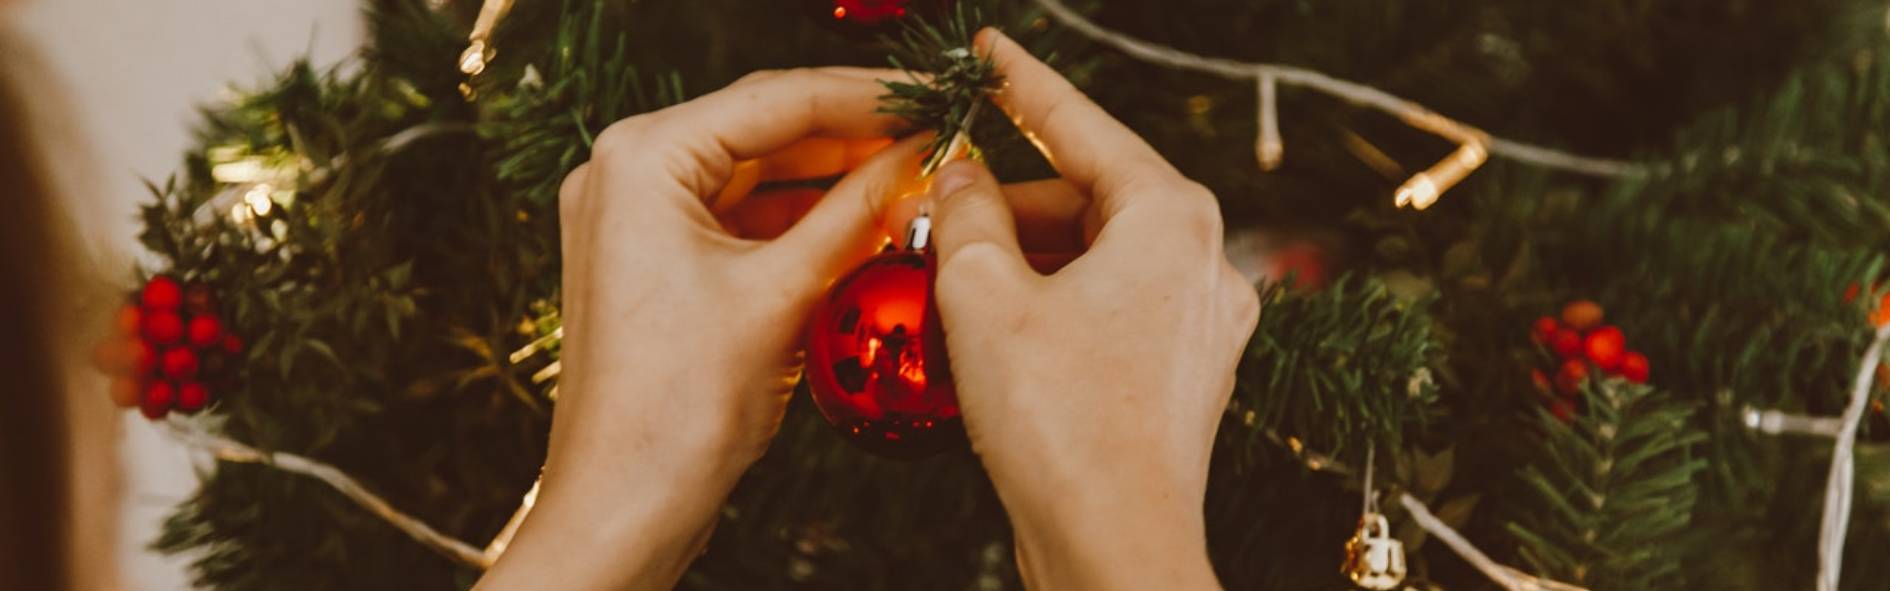 Tips para hacer adornos navideños caseros con materiales reciclados